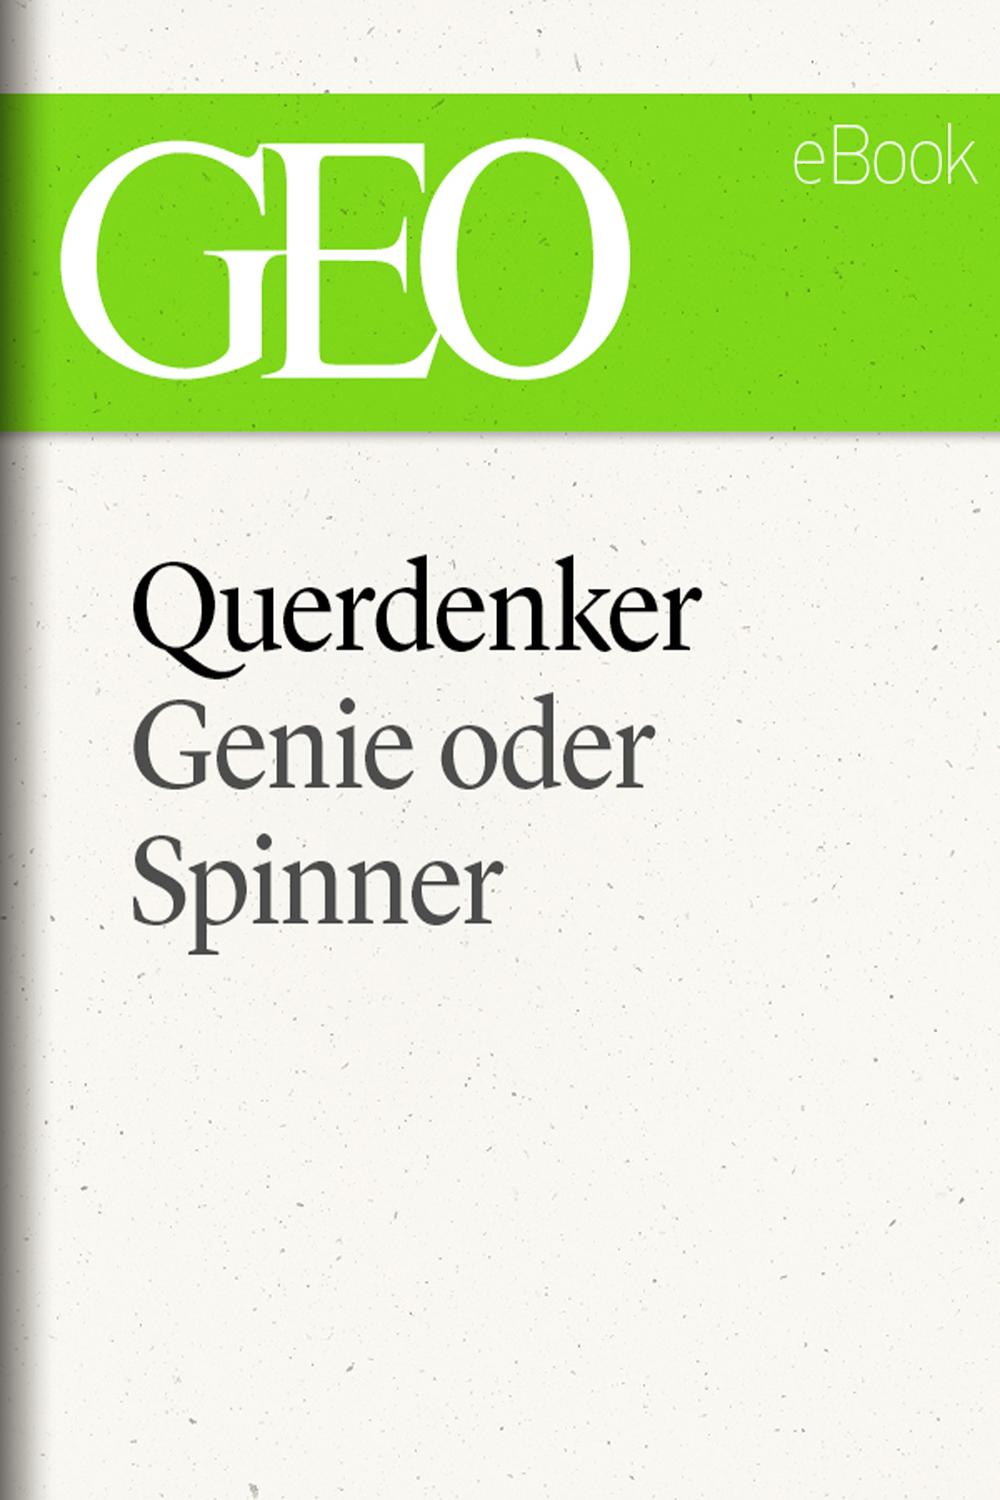 Querdenker: Genie oder Spinner? (GEO eBook Single)